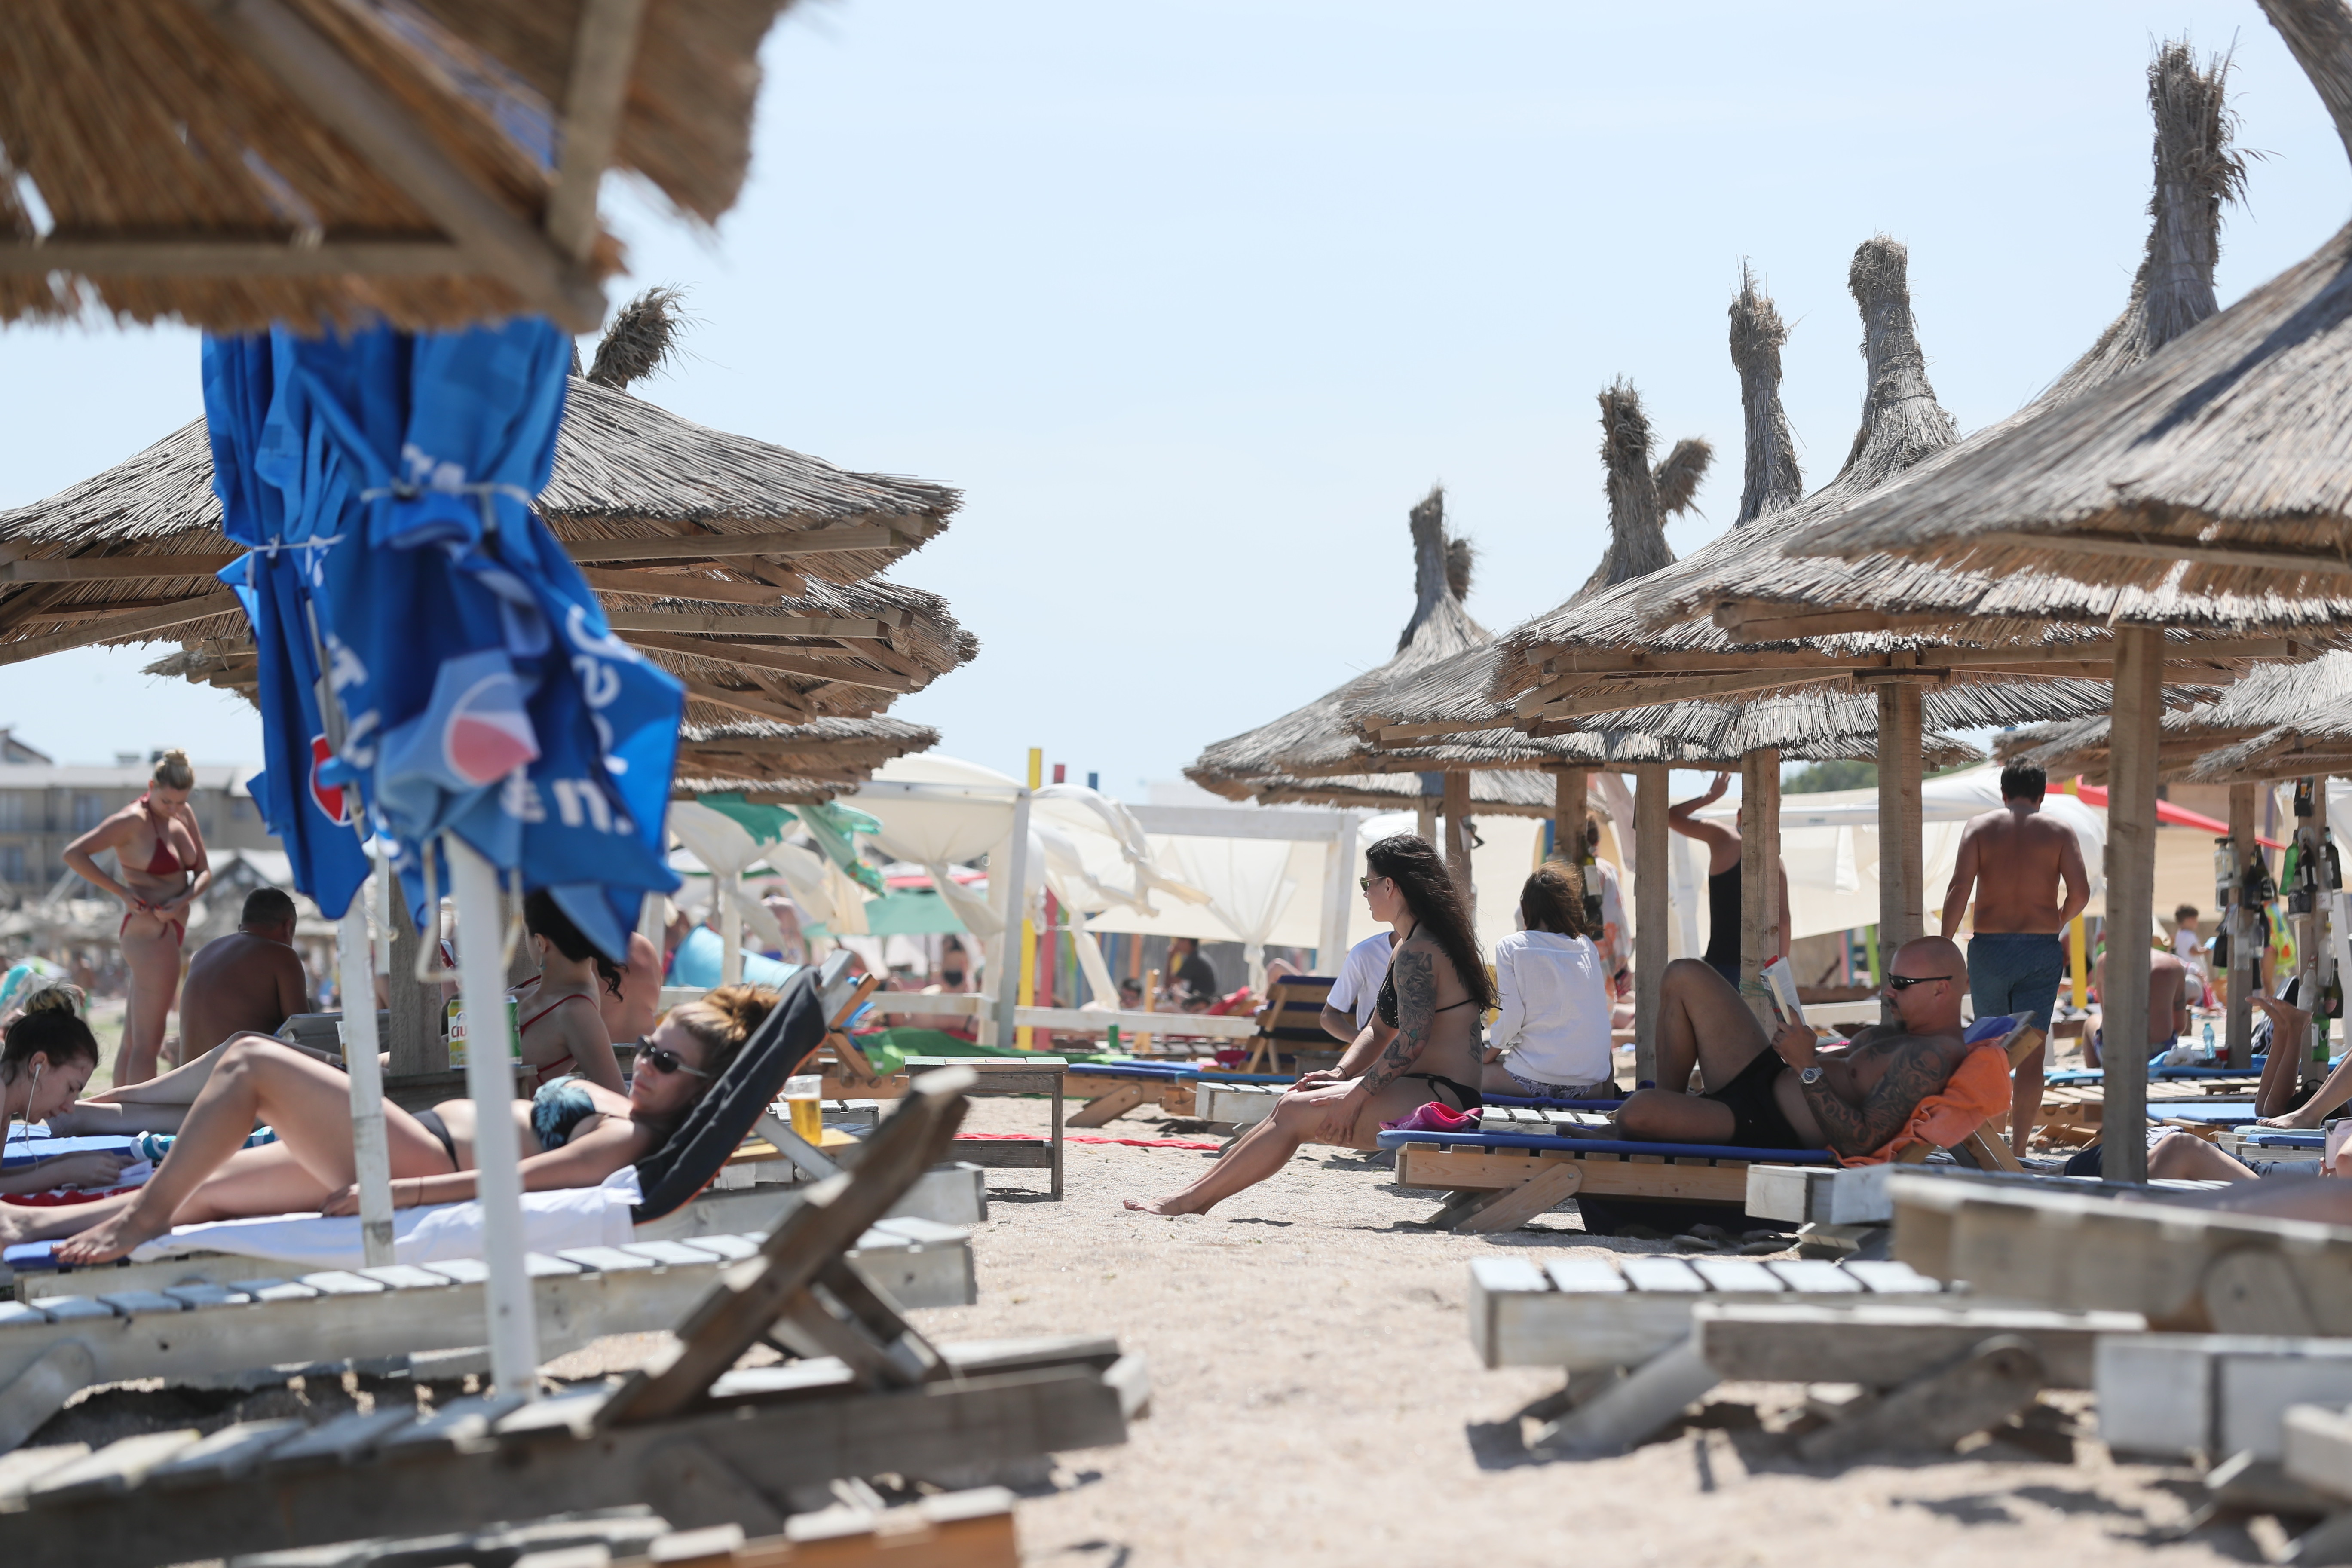 Lista măsurilor anti-covid care trebuie respectate pentru protecția turiștilor de pe plaje